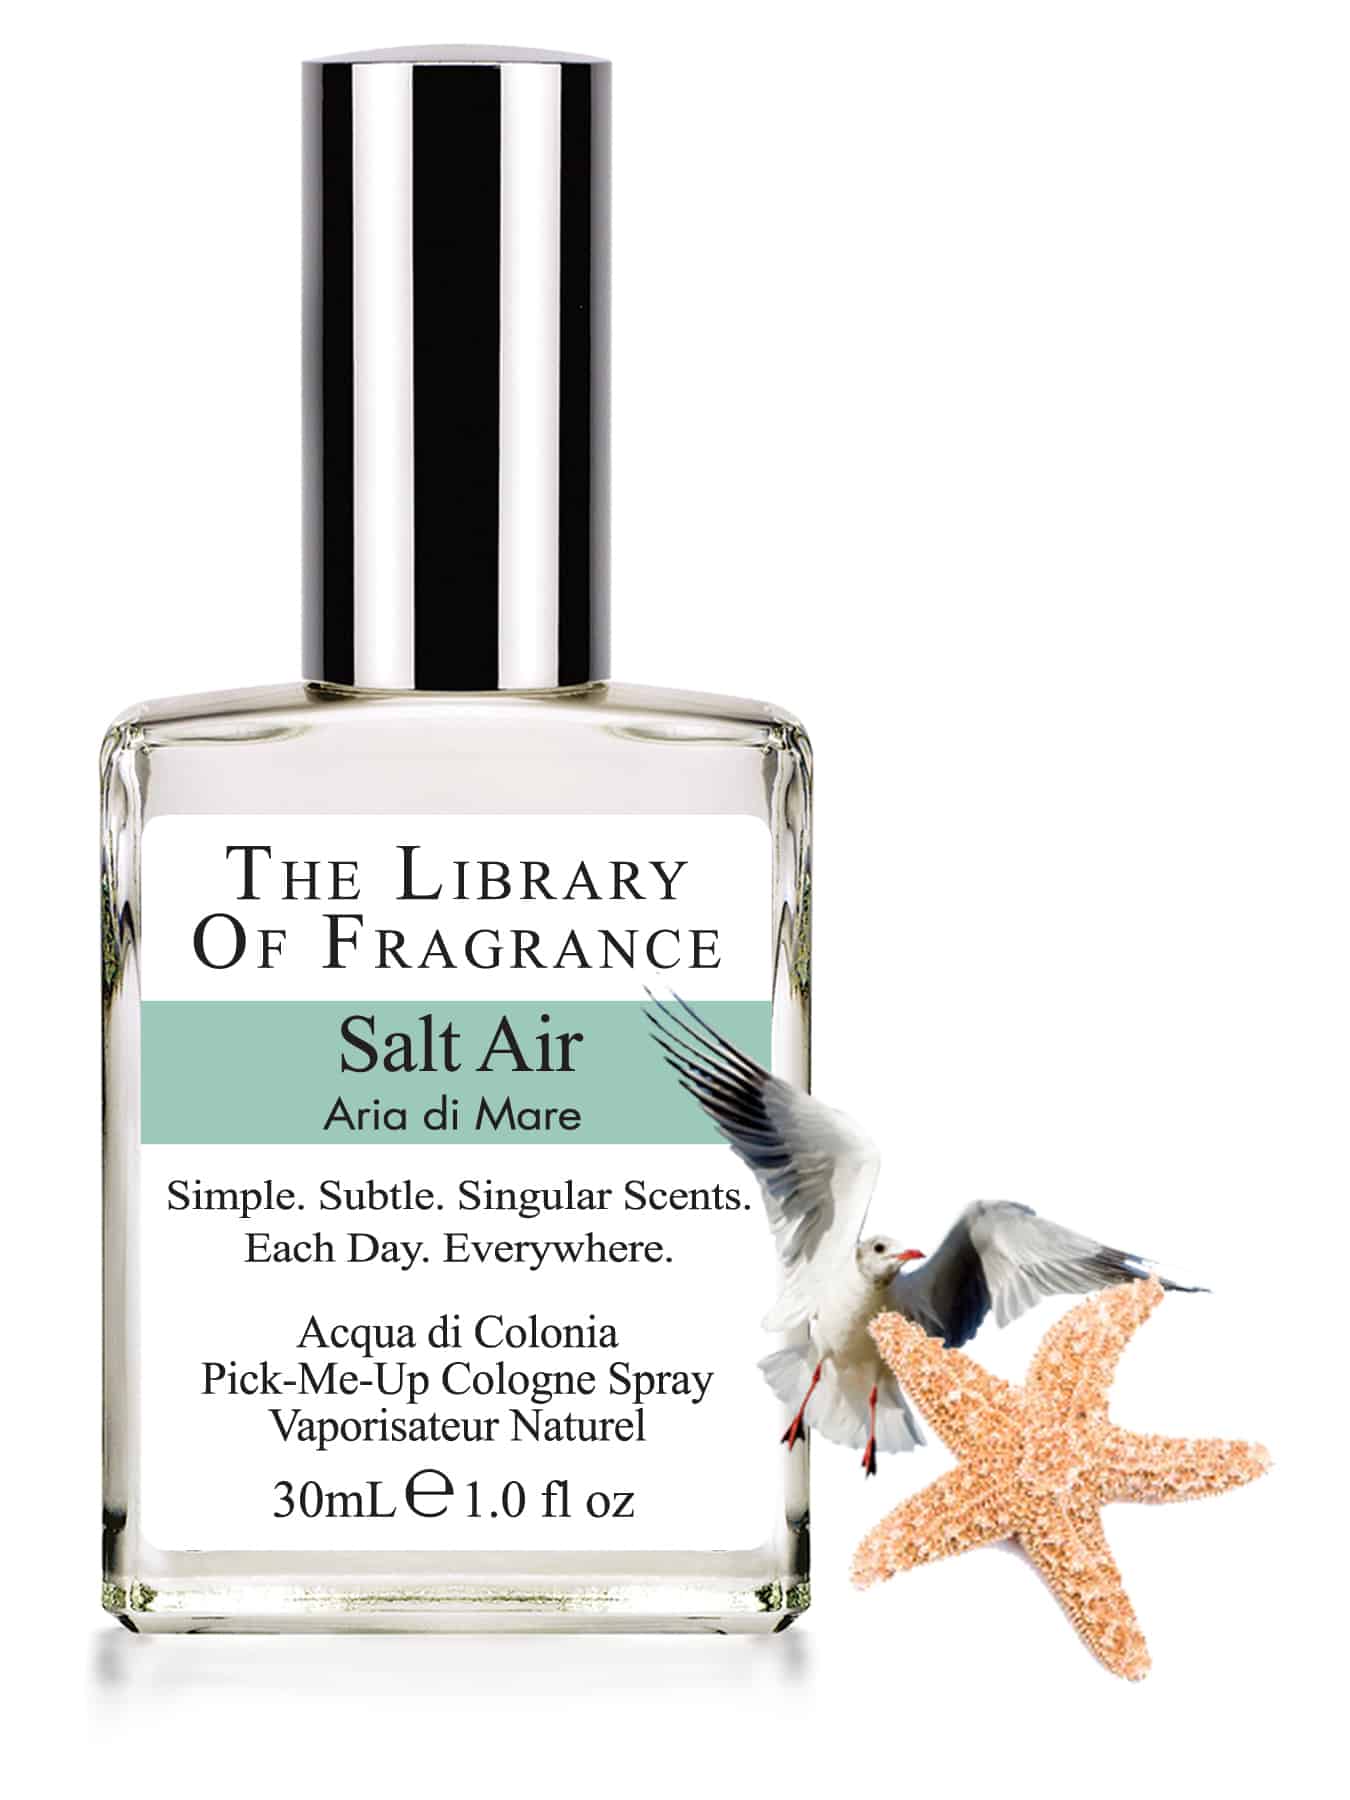 SALT AIR, la fragranza di The Library of Fragrance che ci ricorda la brezza marina!